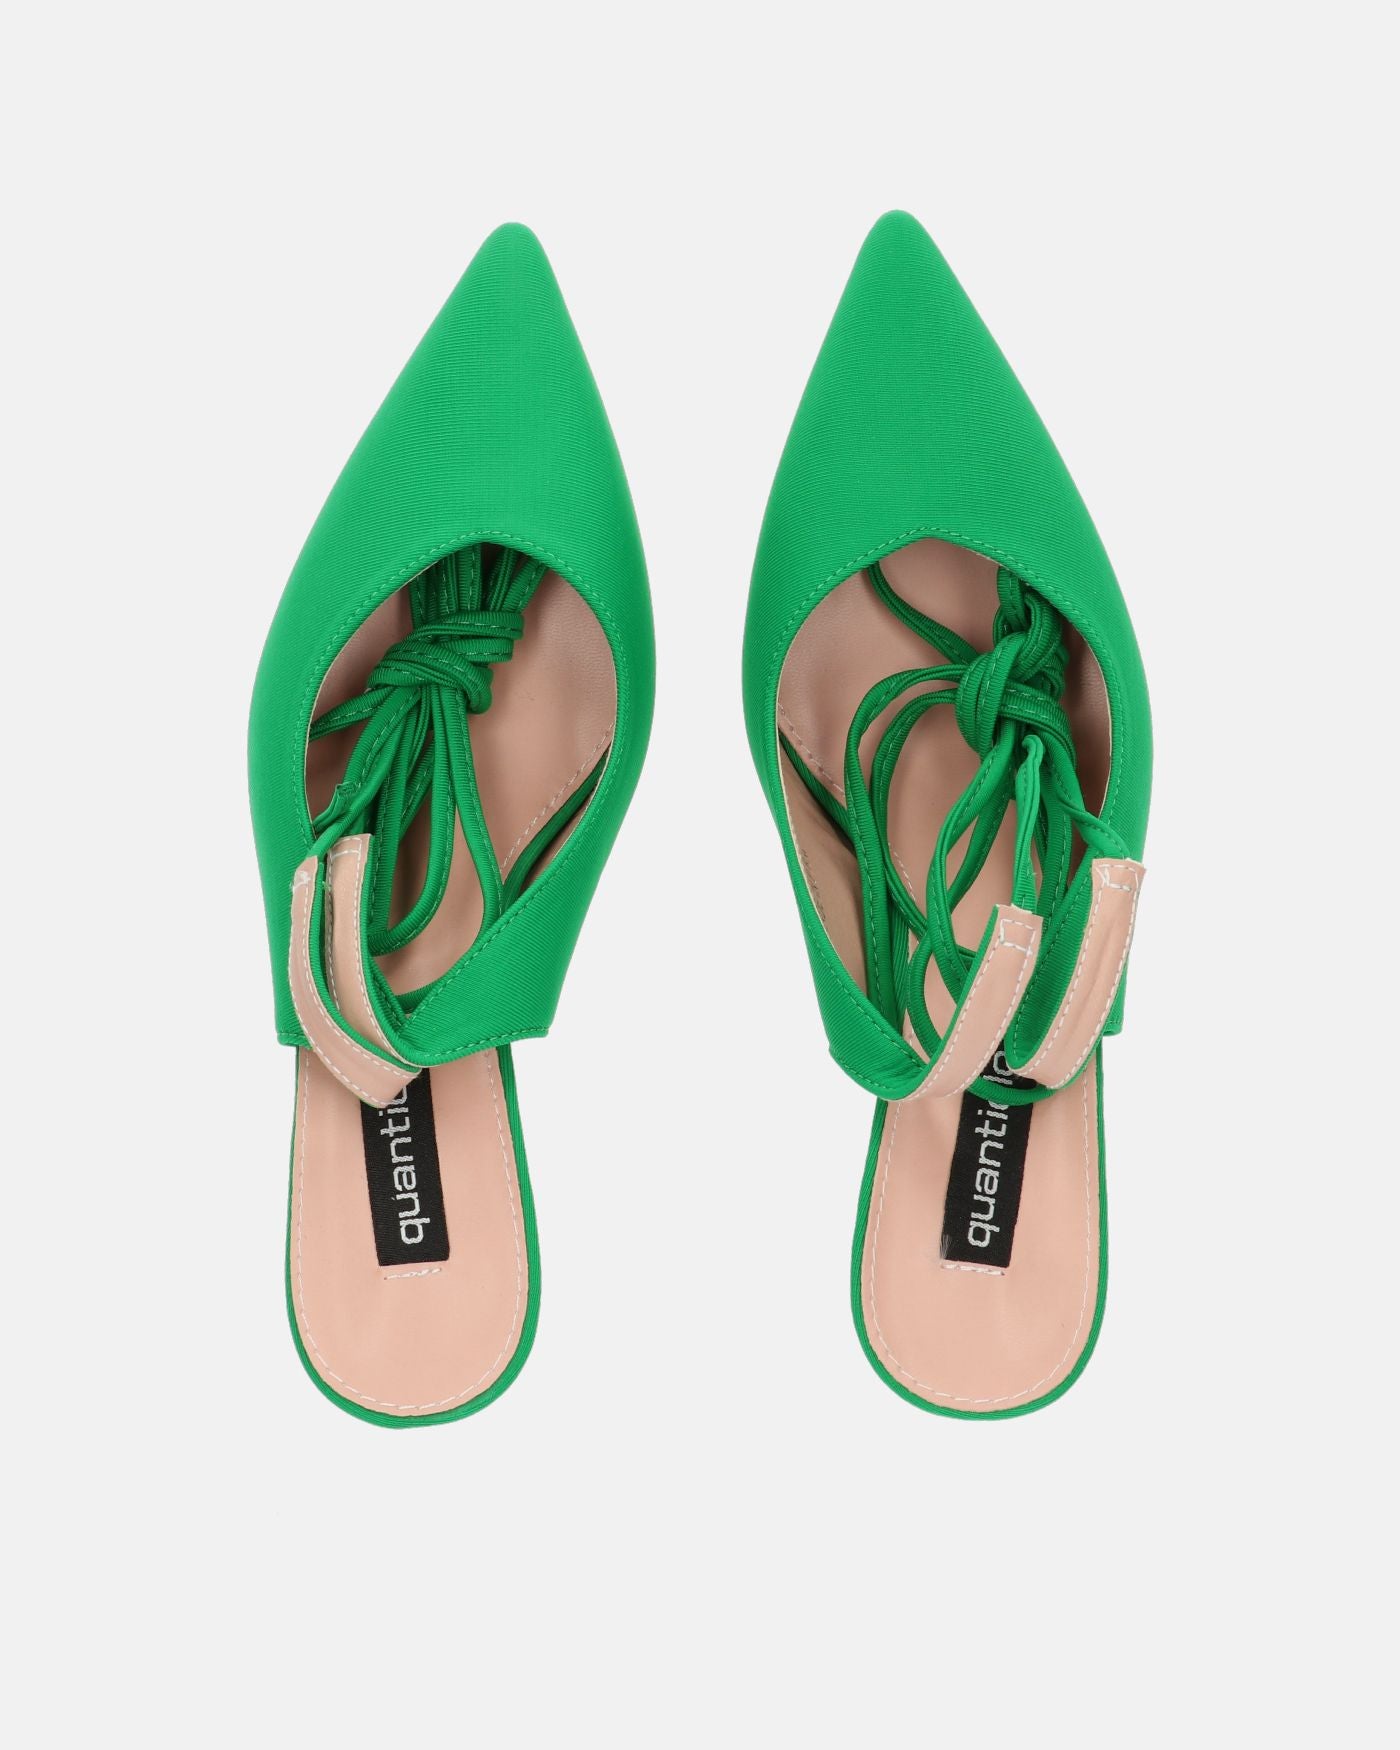 IOLE - scarpe con tacco a spillo in lycra verde